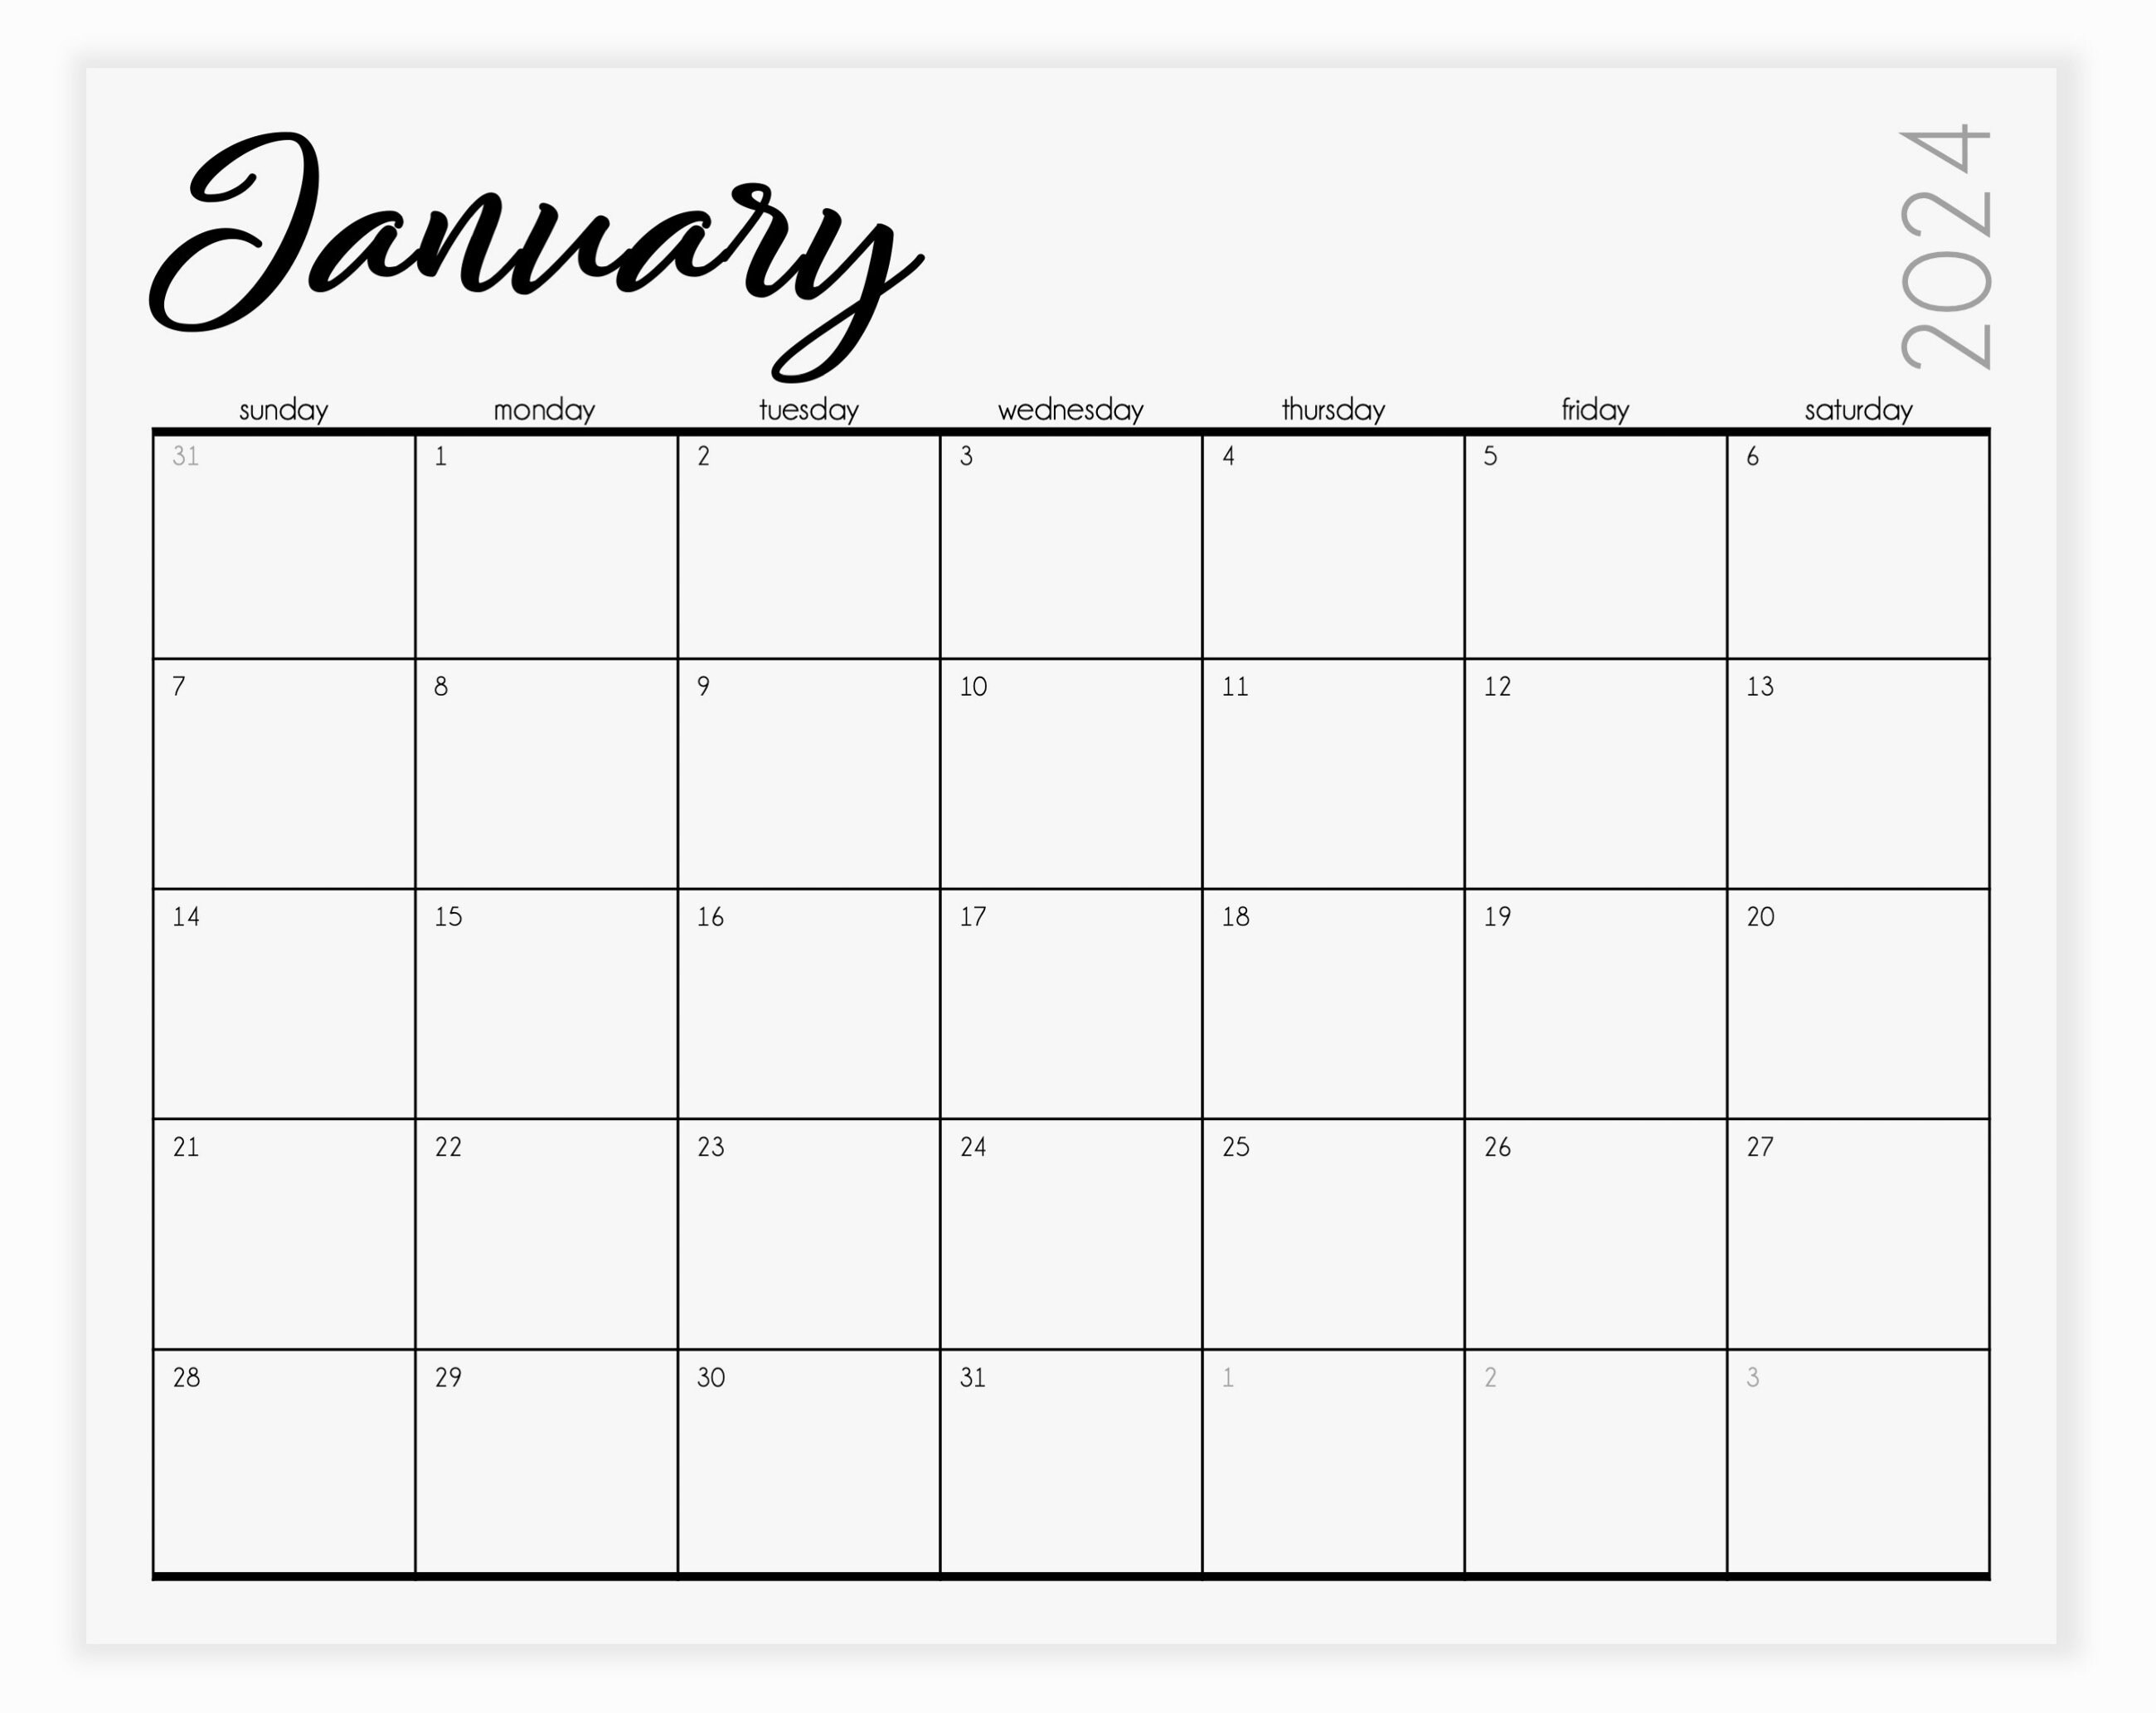 Calendrier 2023 bureau debout semaine planificateur bureau d'affaires  couleur unie calendriers bloc-notes décorations pour la maison table  horaire quotidien 